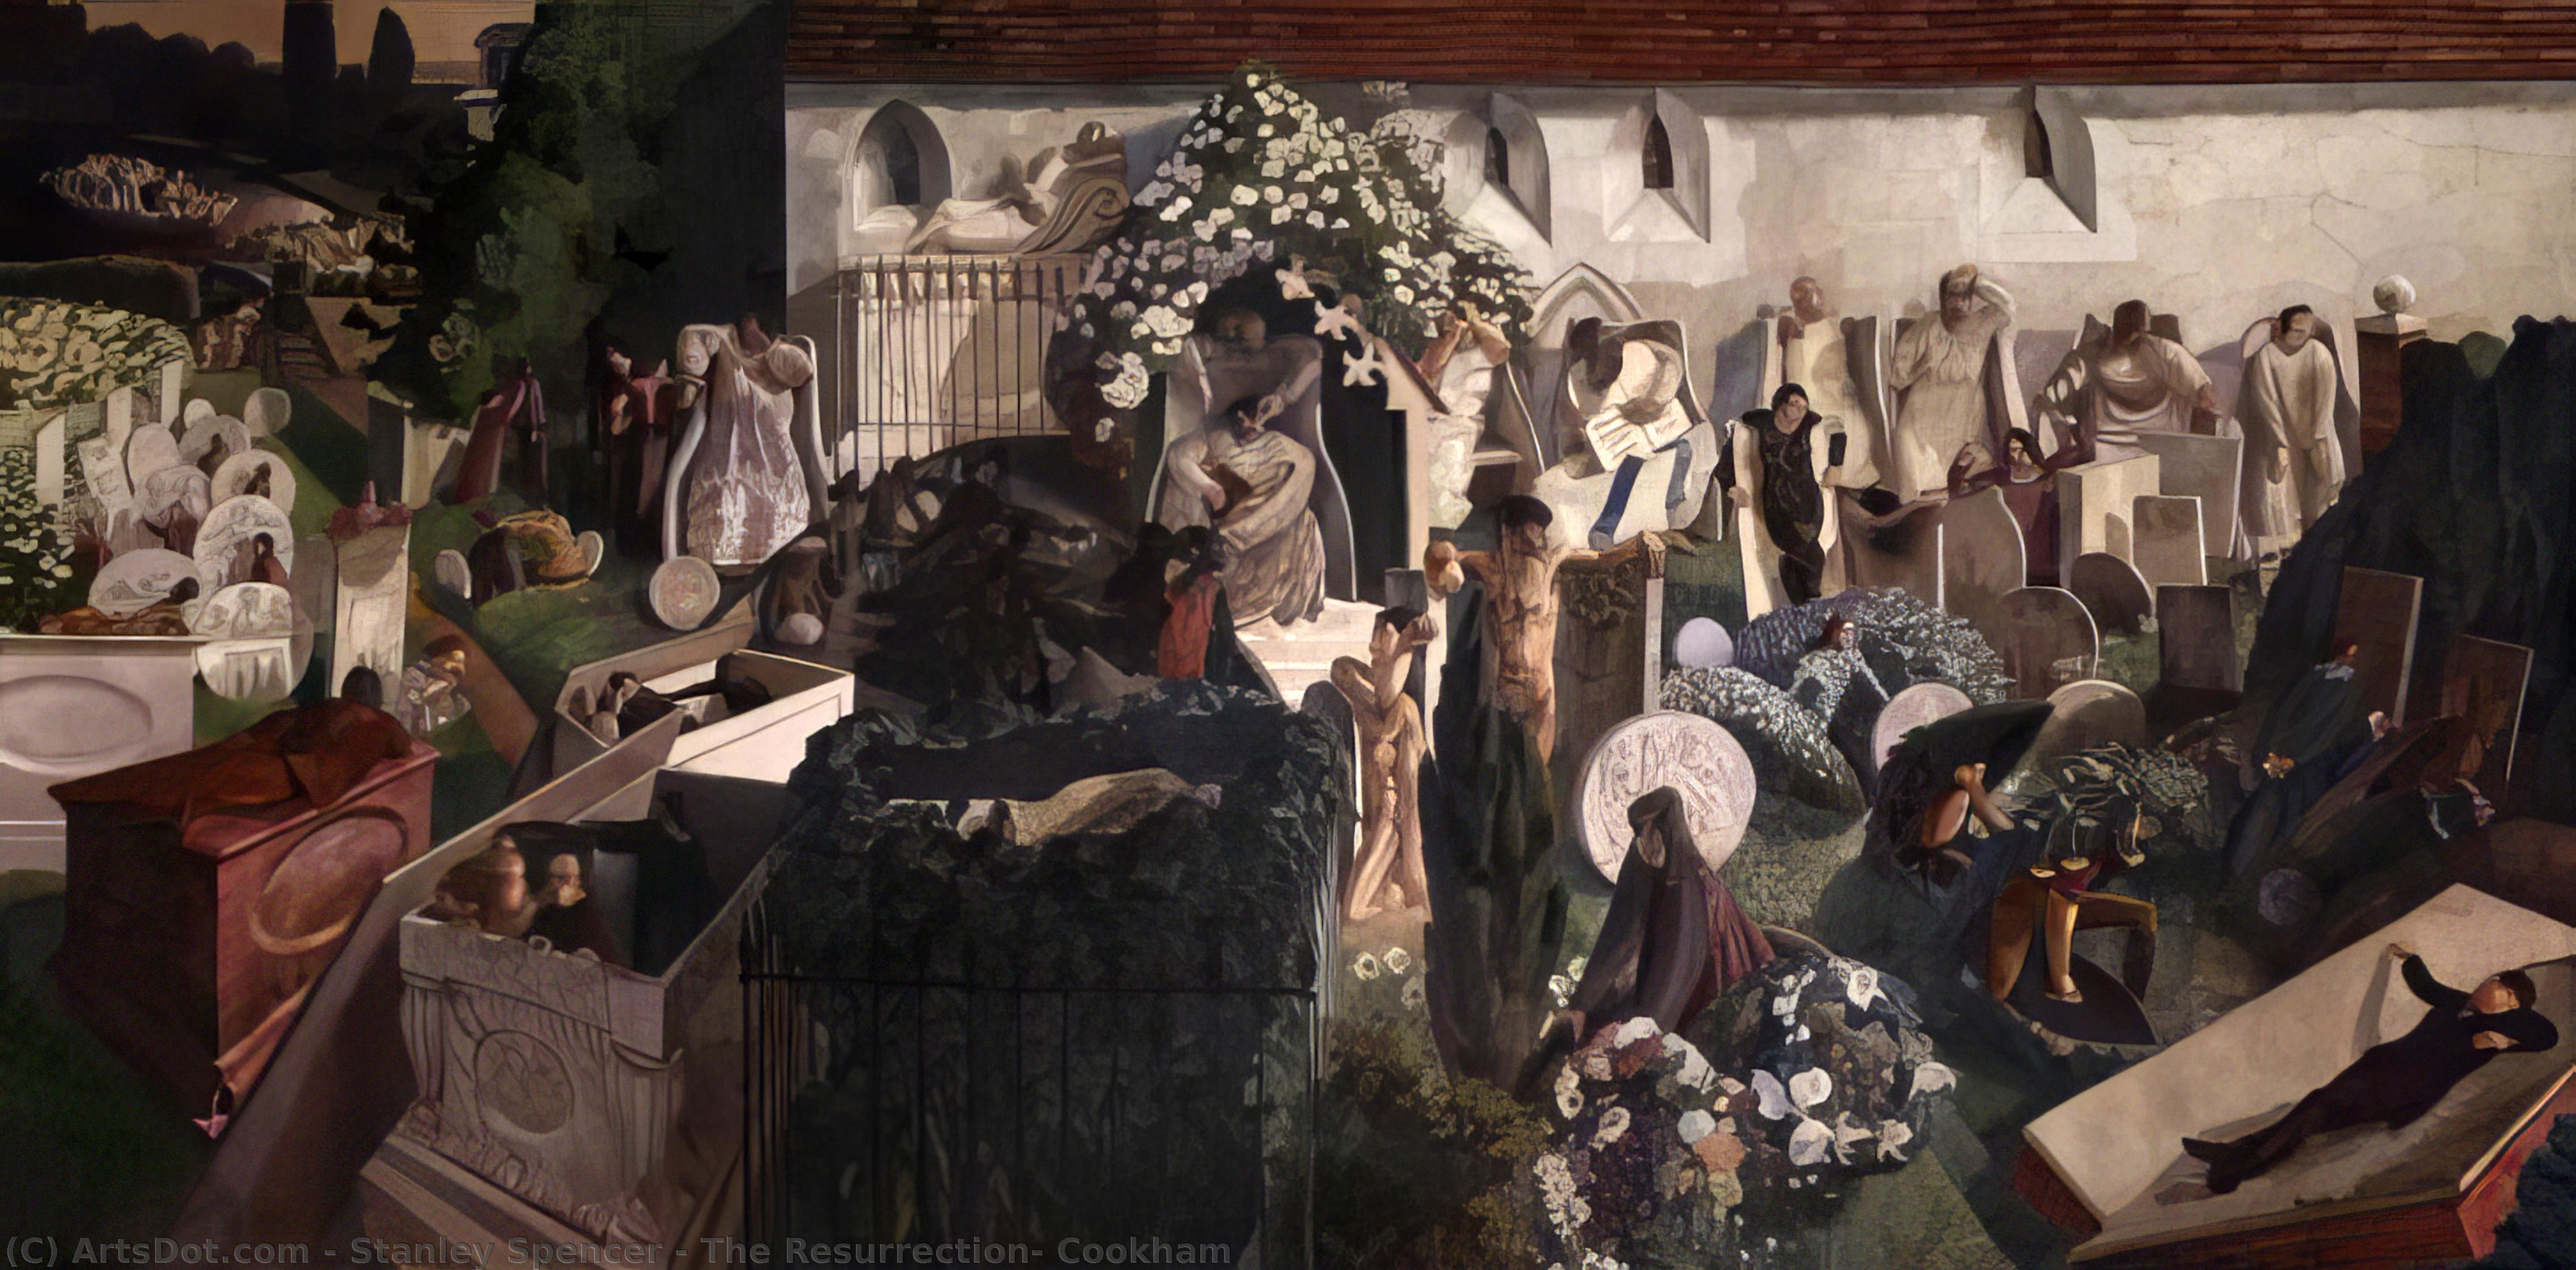 WikiOO.org - Enciklopedija likovnih umjetnosti - Slikarstvo, umjetnička djela Stanley Spencer - The Resurrection, Cookham